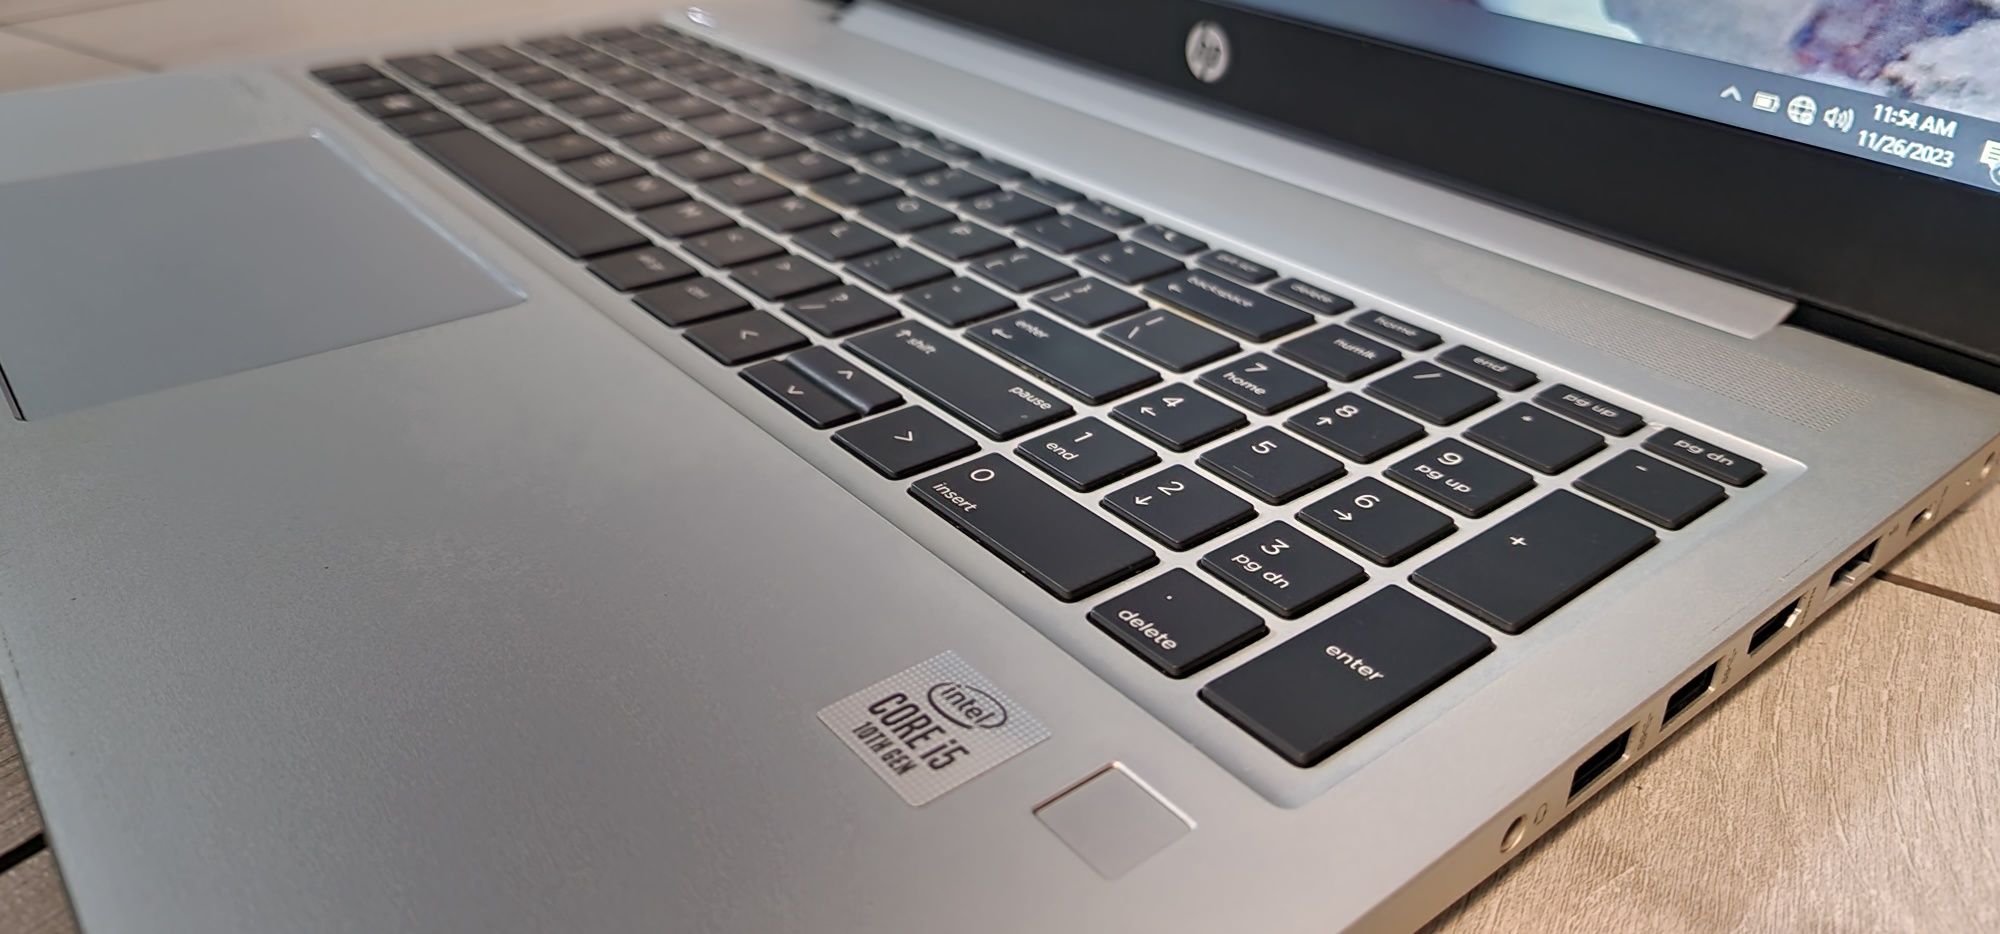 Laptop HP ProBook G7_i5 10210U_SSD 512GB_NVidia MX130 2GB_16GB_15.6"_